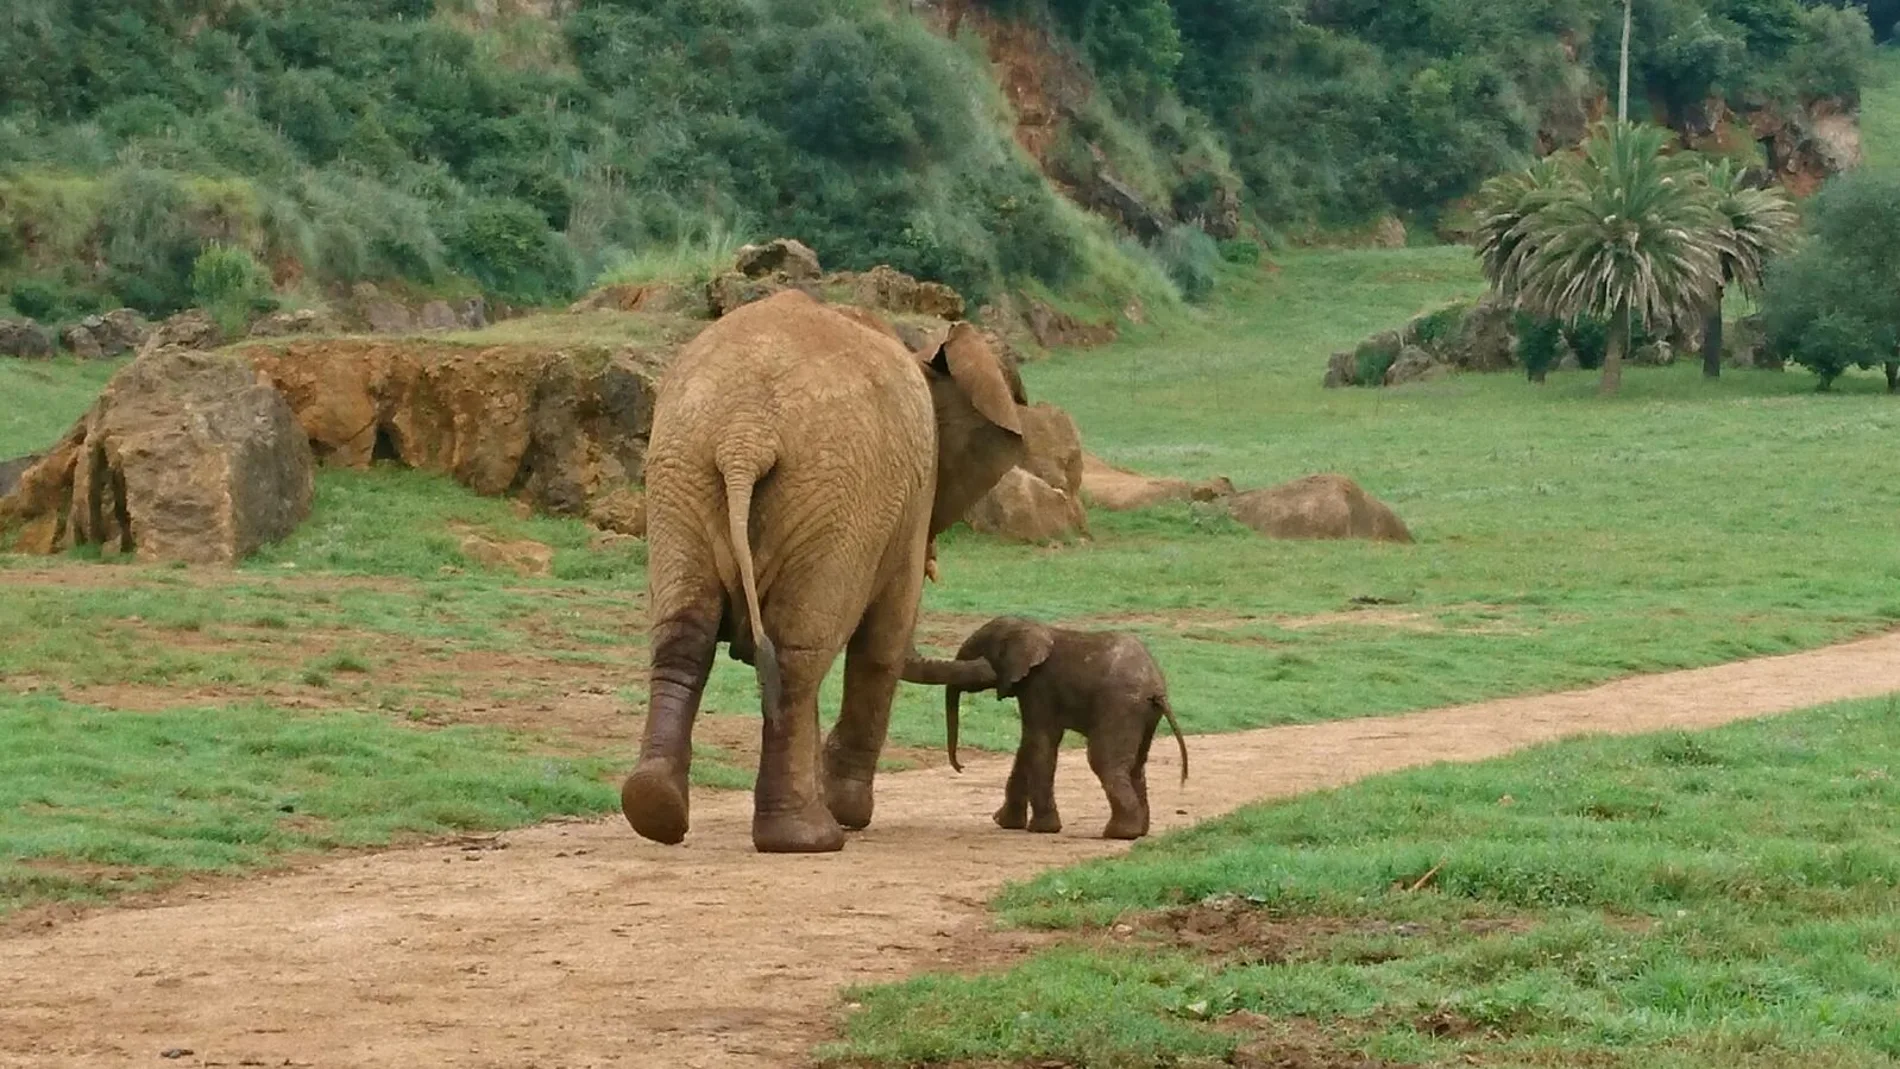 Imagen de un elefante africano junto a su cría en el Parque de la Naturaleza de Cabárceno